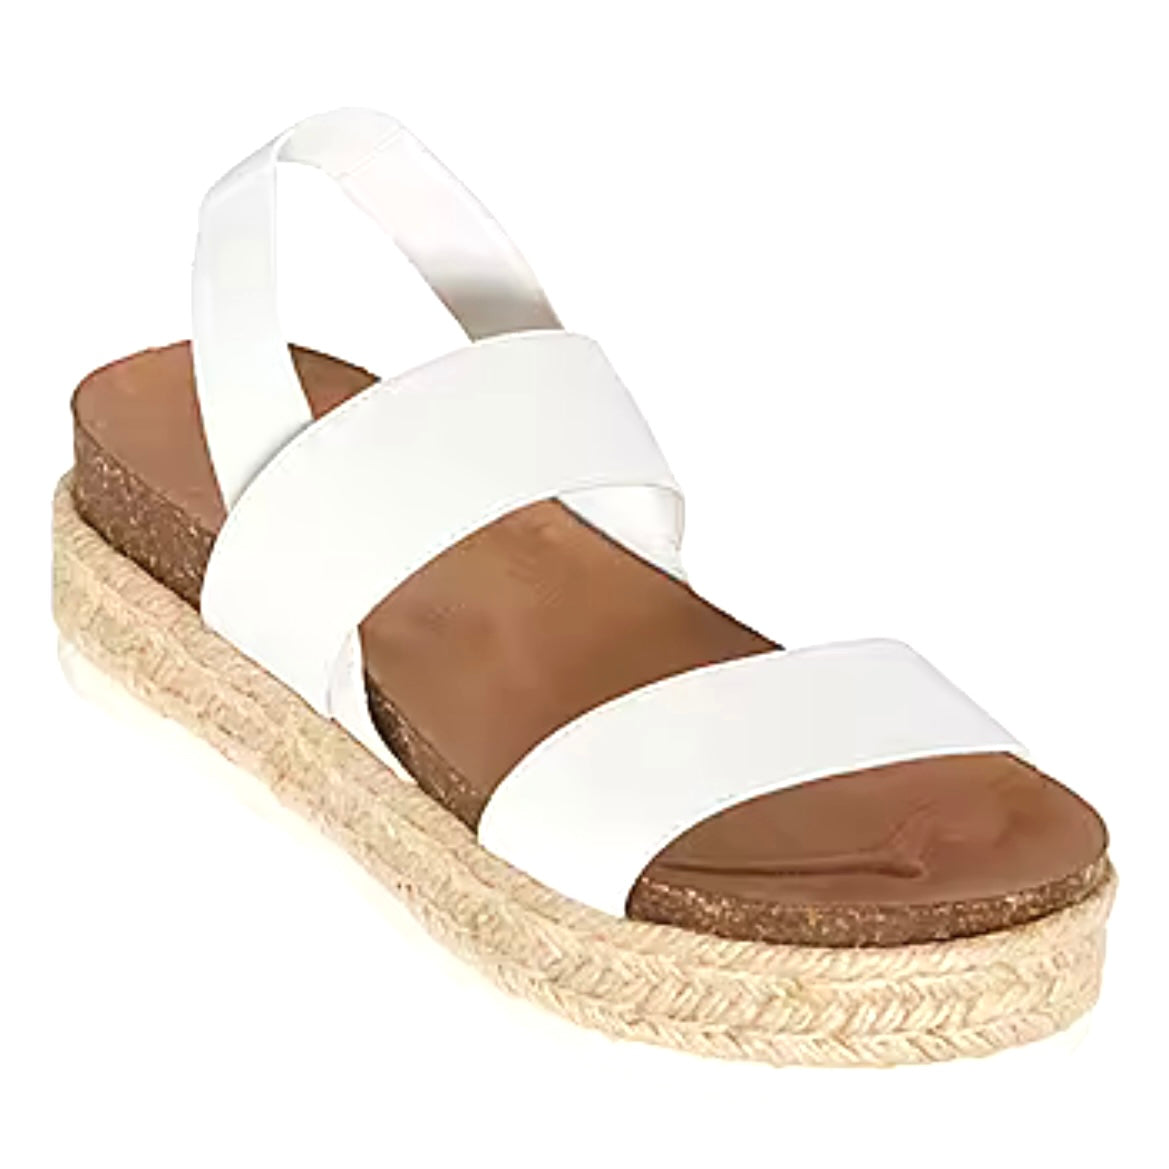 Coy White Size 10 M Slip On Open Toe Women's Wedge Sandals